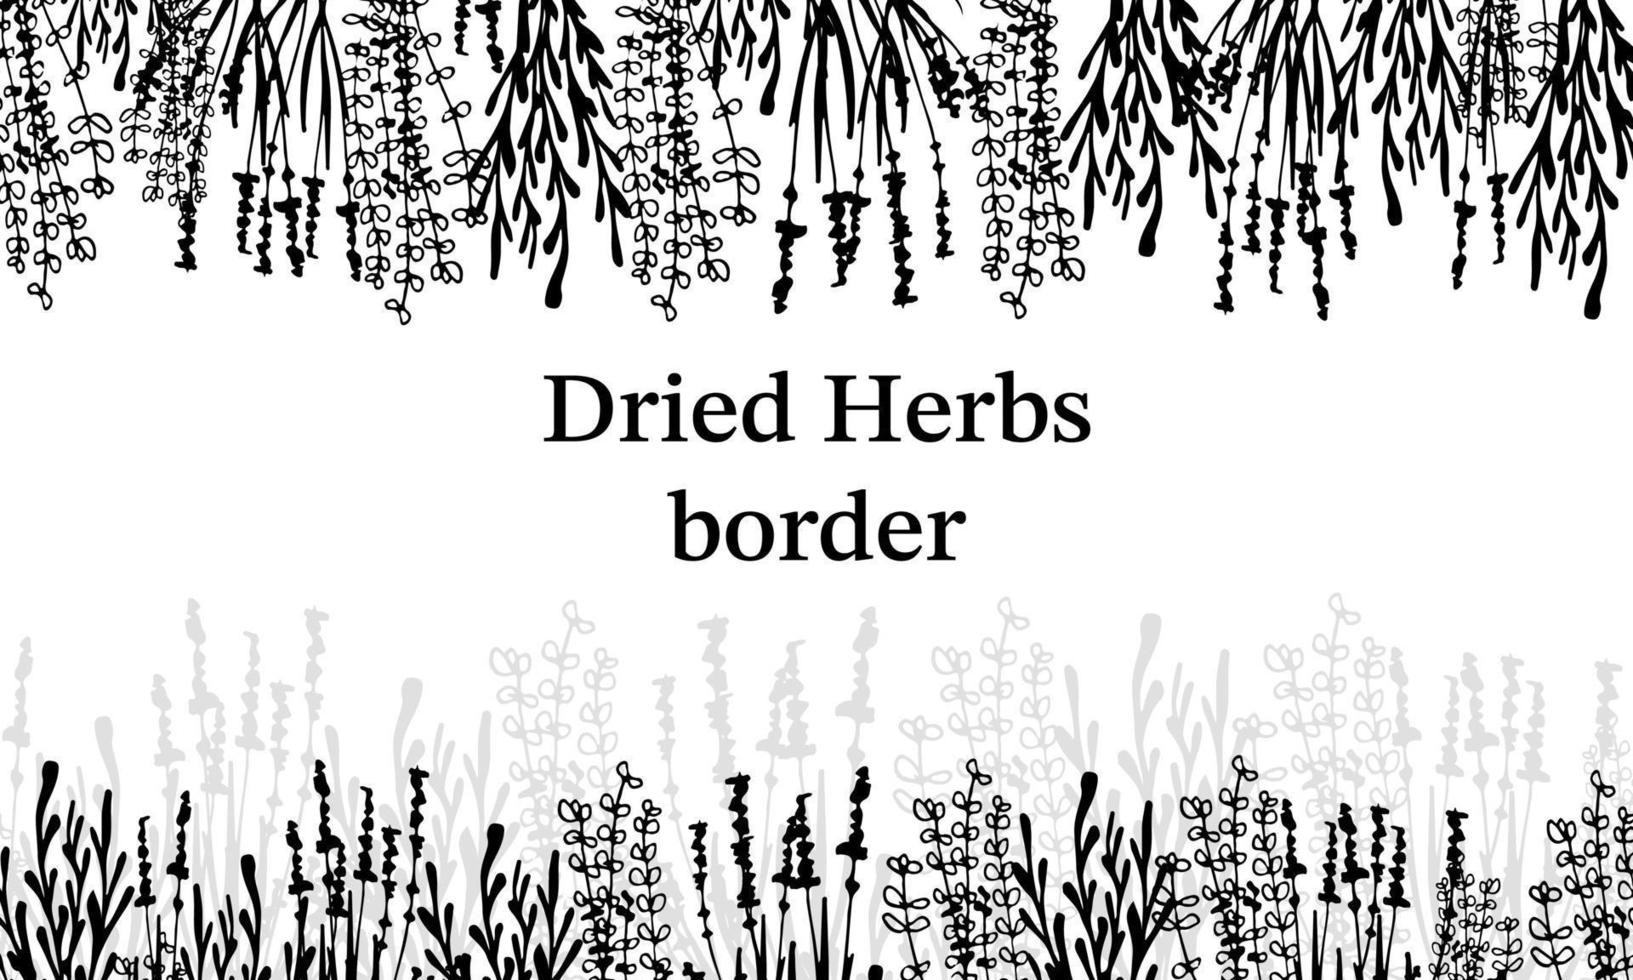 ervas secas de fronteira, flores secas. Medicina natural. ilustração em vetor preto e branco